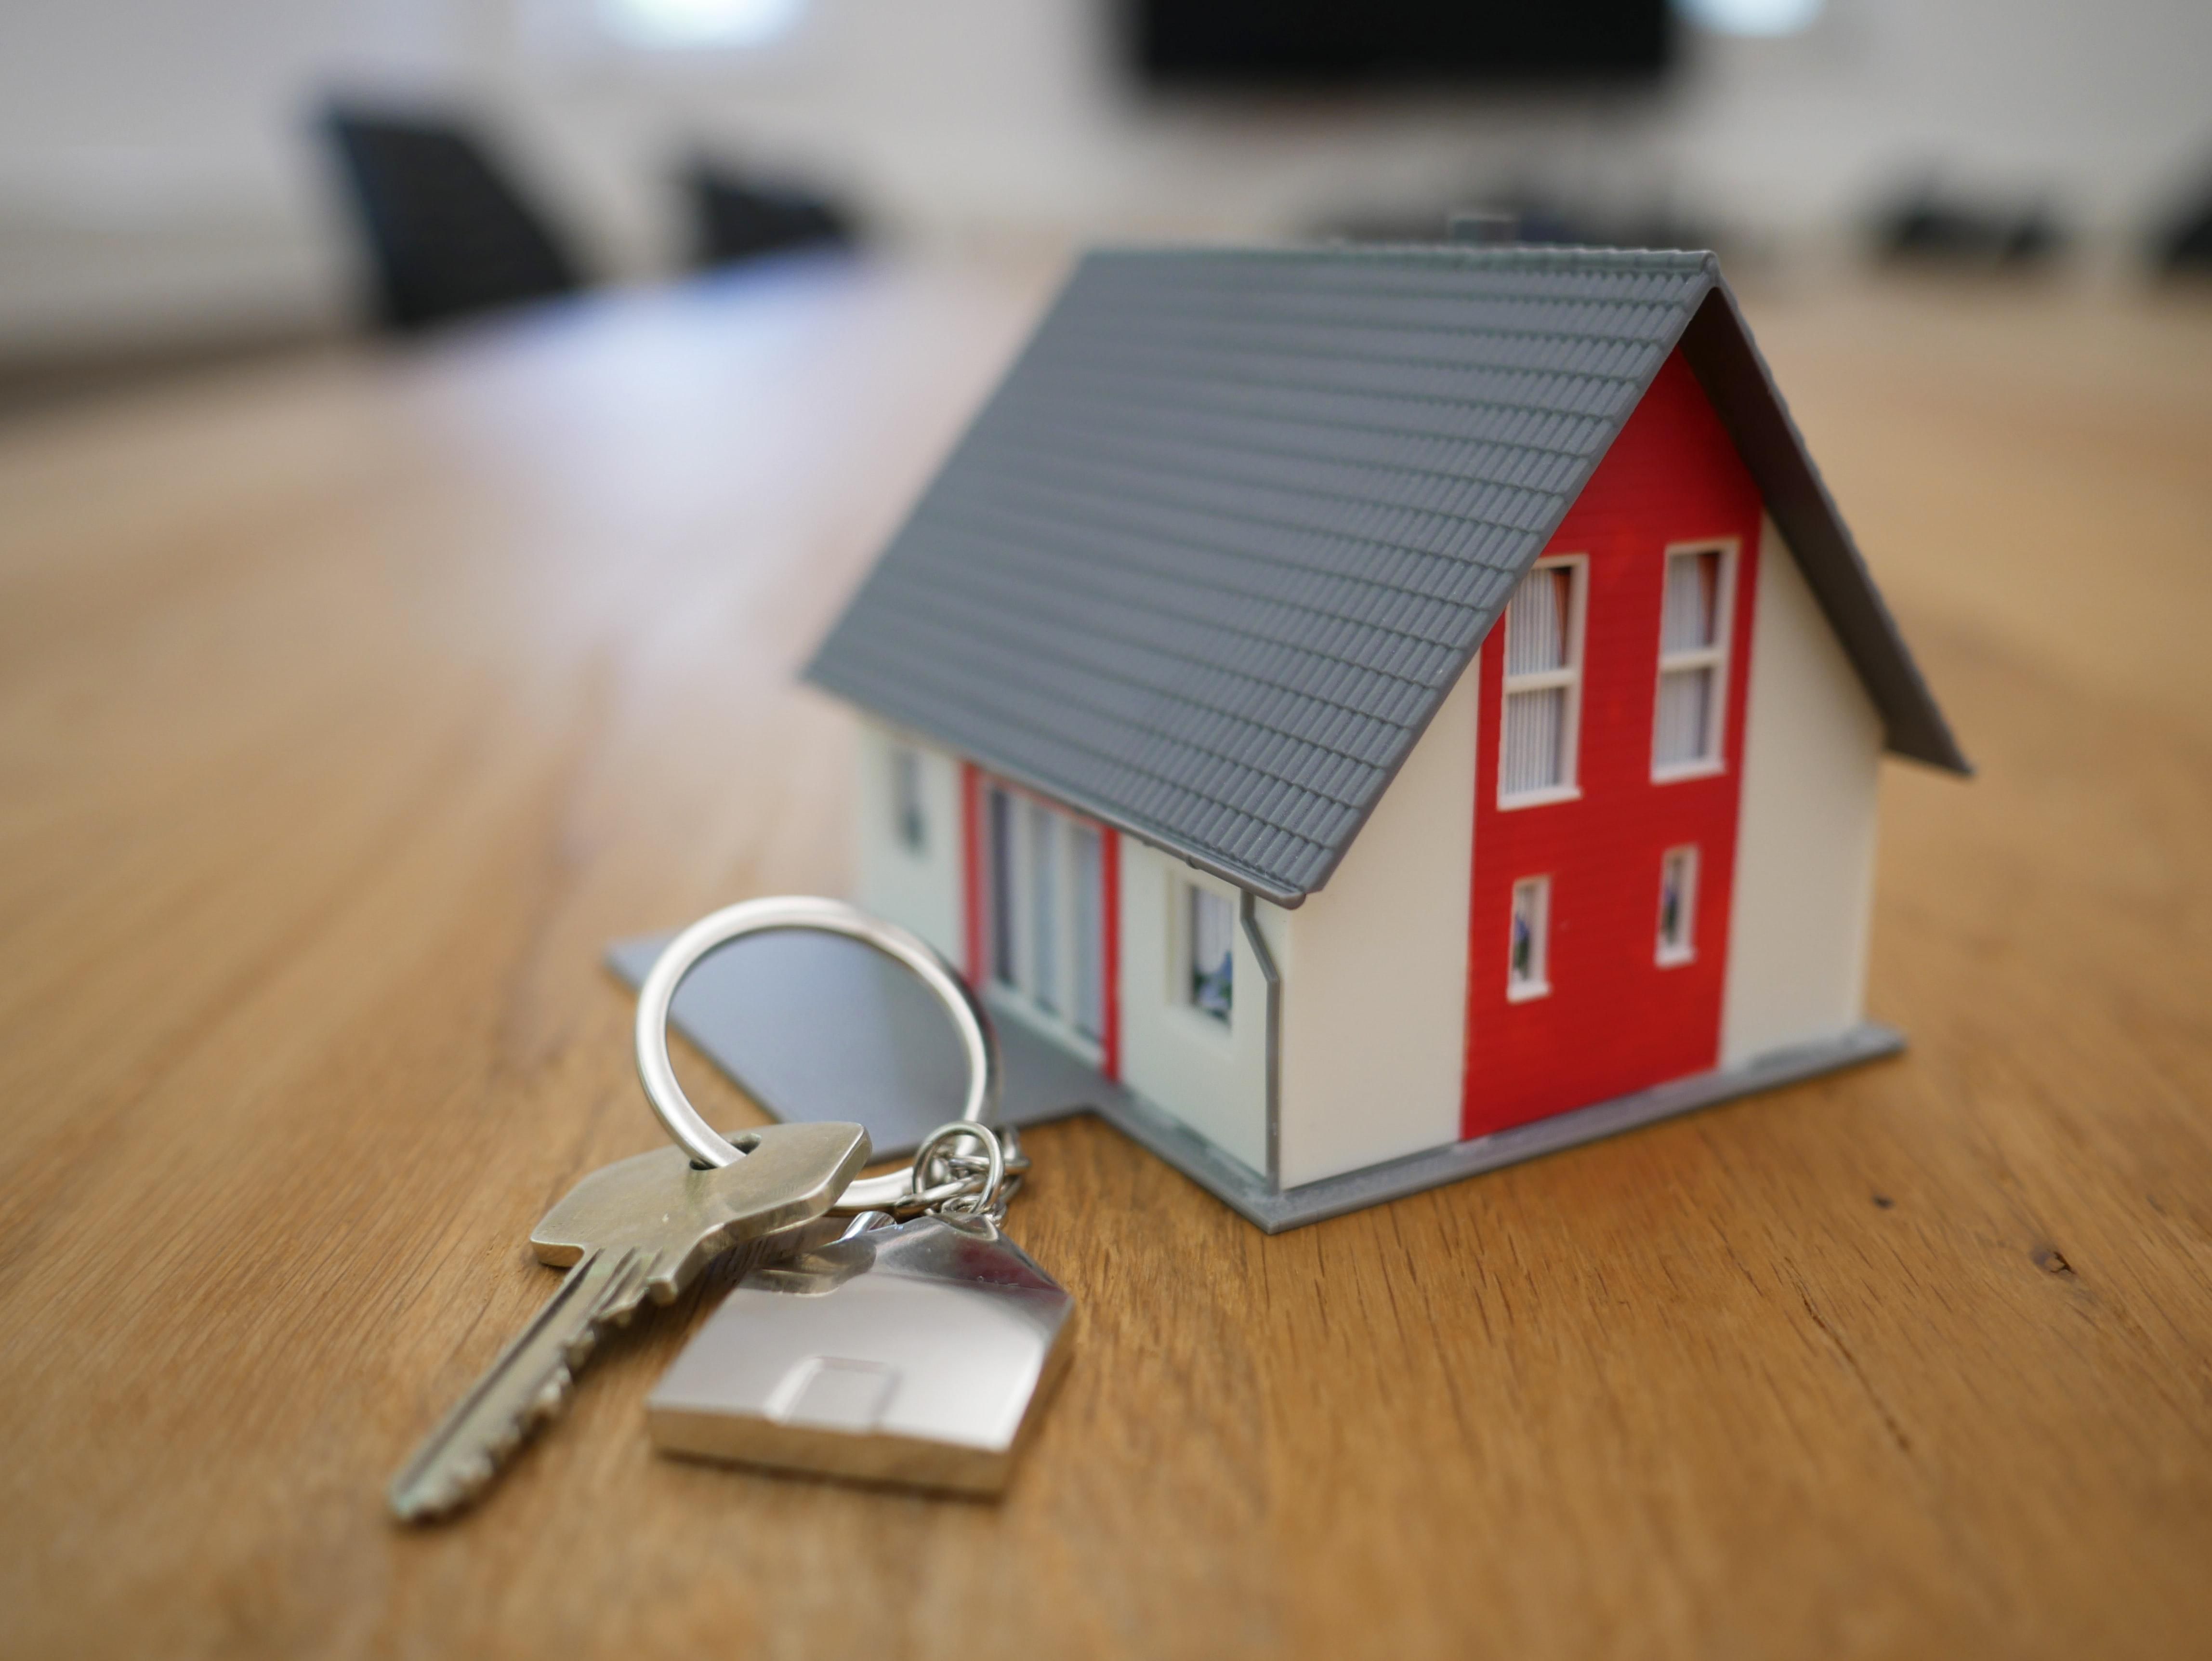 В Украине запустили онлайн-сервис юридической проверки недвижимости: как работает, сколько стоит